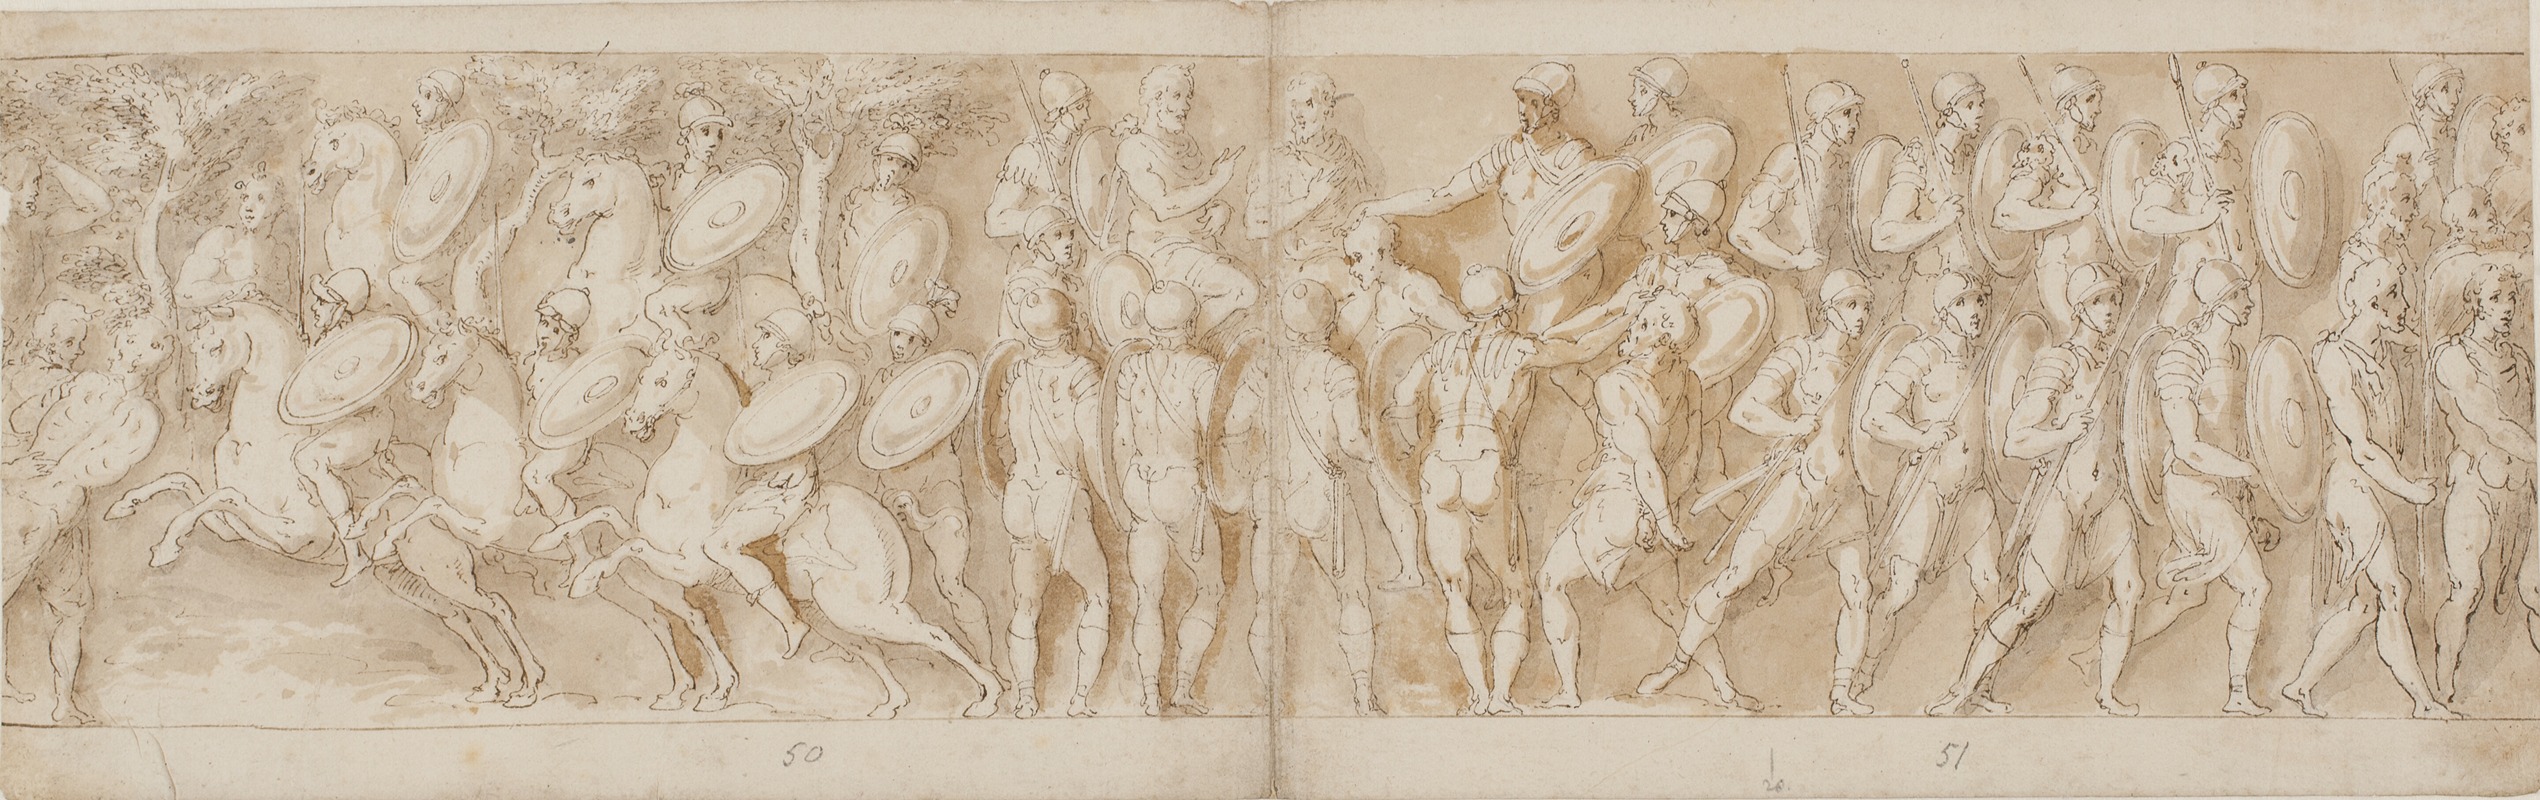 Giovanni Guerra - Romersk kavaleri; et afhugget hoved af Guerra fortolket som en fange og en germansk fange fremføres for kejseren; romere rykker frem